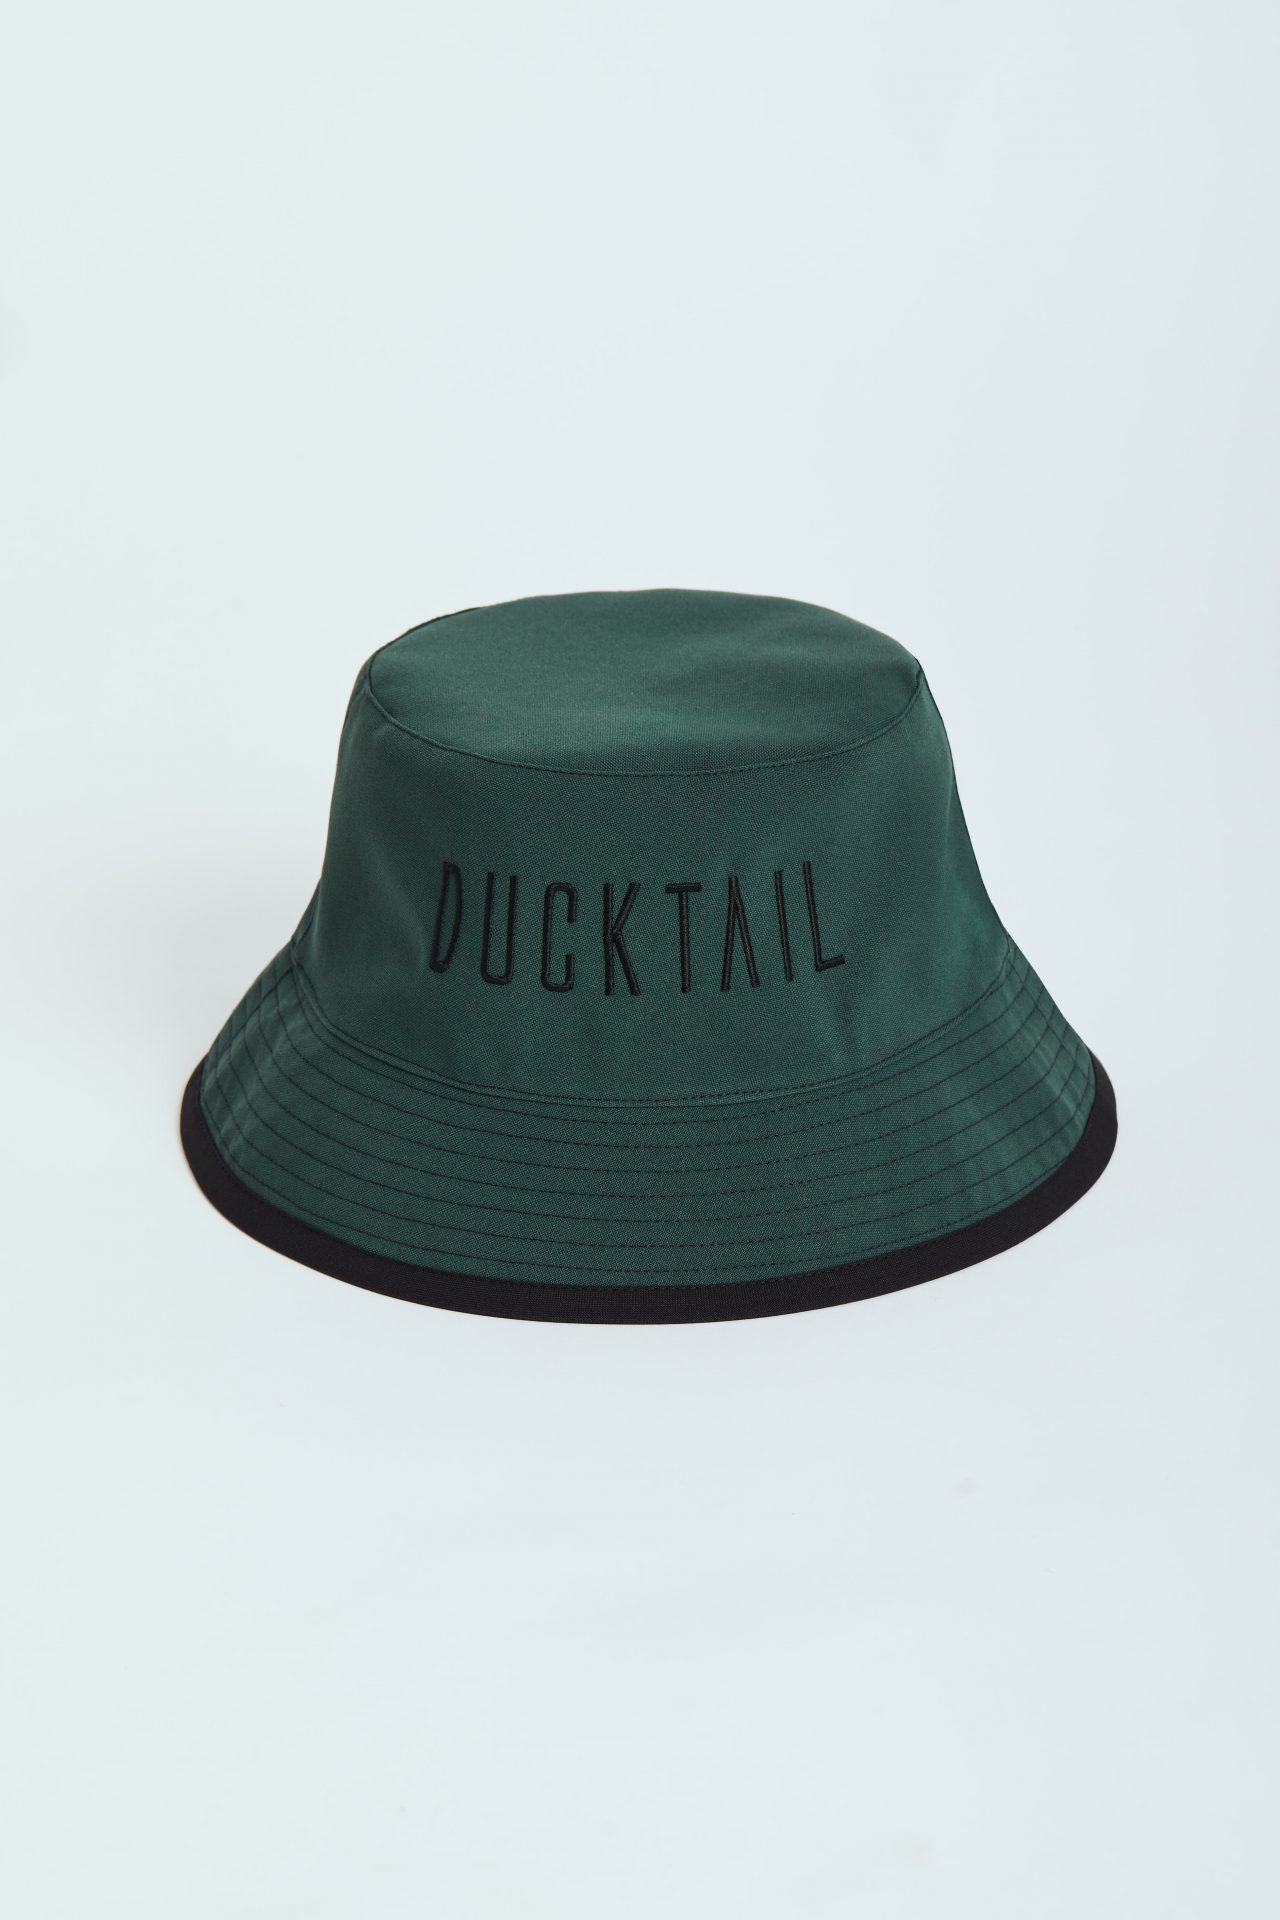 FISCHERHUT - Ducktail Rainwear